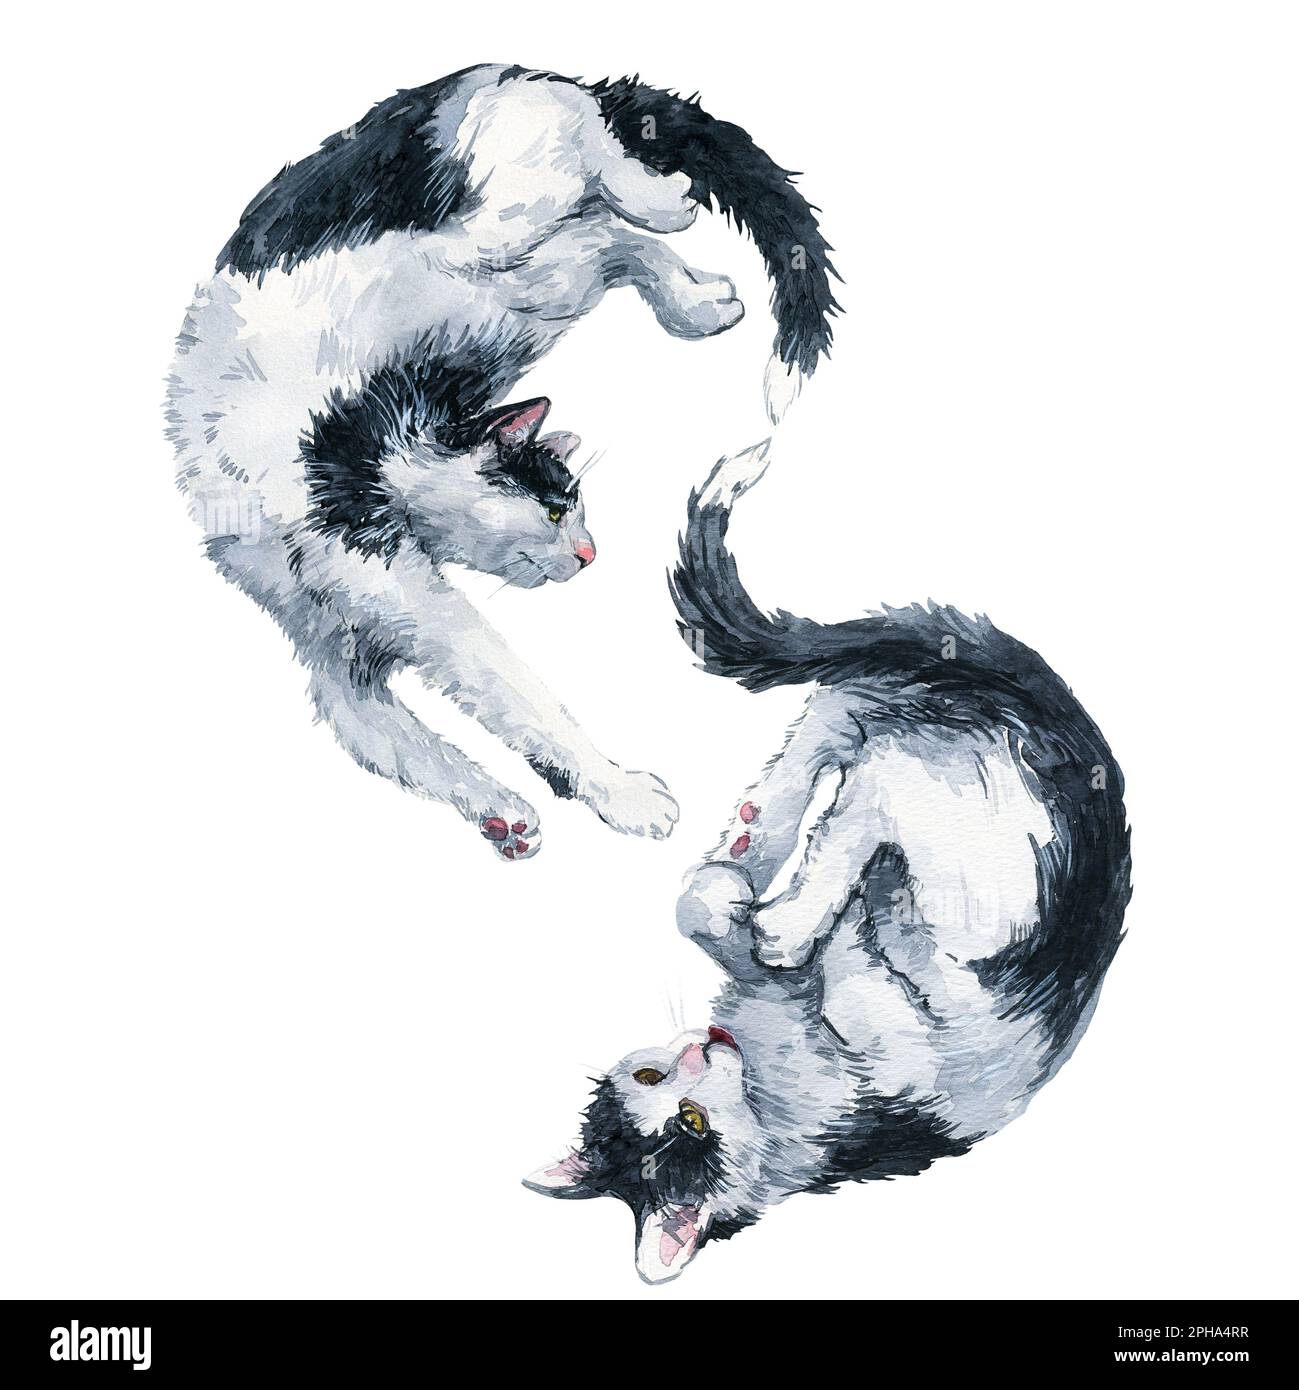 Deux chats noir-blanc jouent le symbole de l'infini. Masque de peinture aquarelle isolé sur fond blanc. Motif pour tissu, t-shirt, postca Banque D'Images